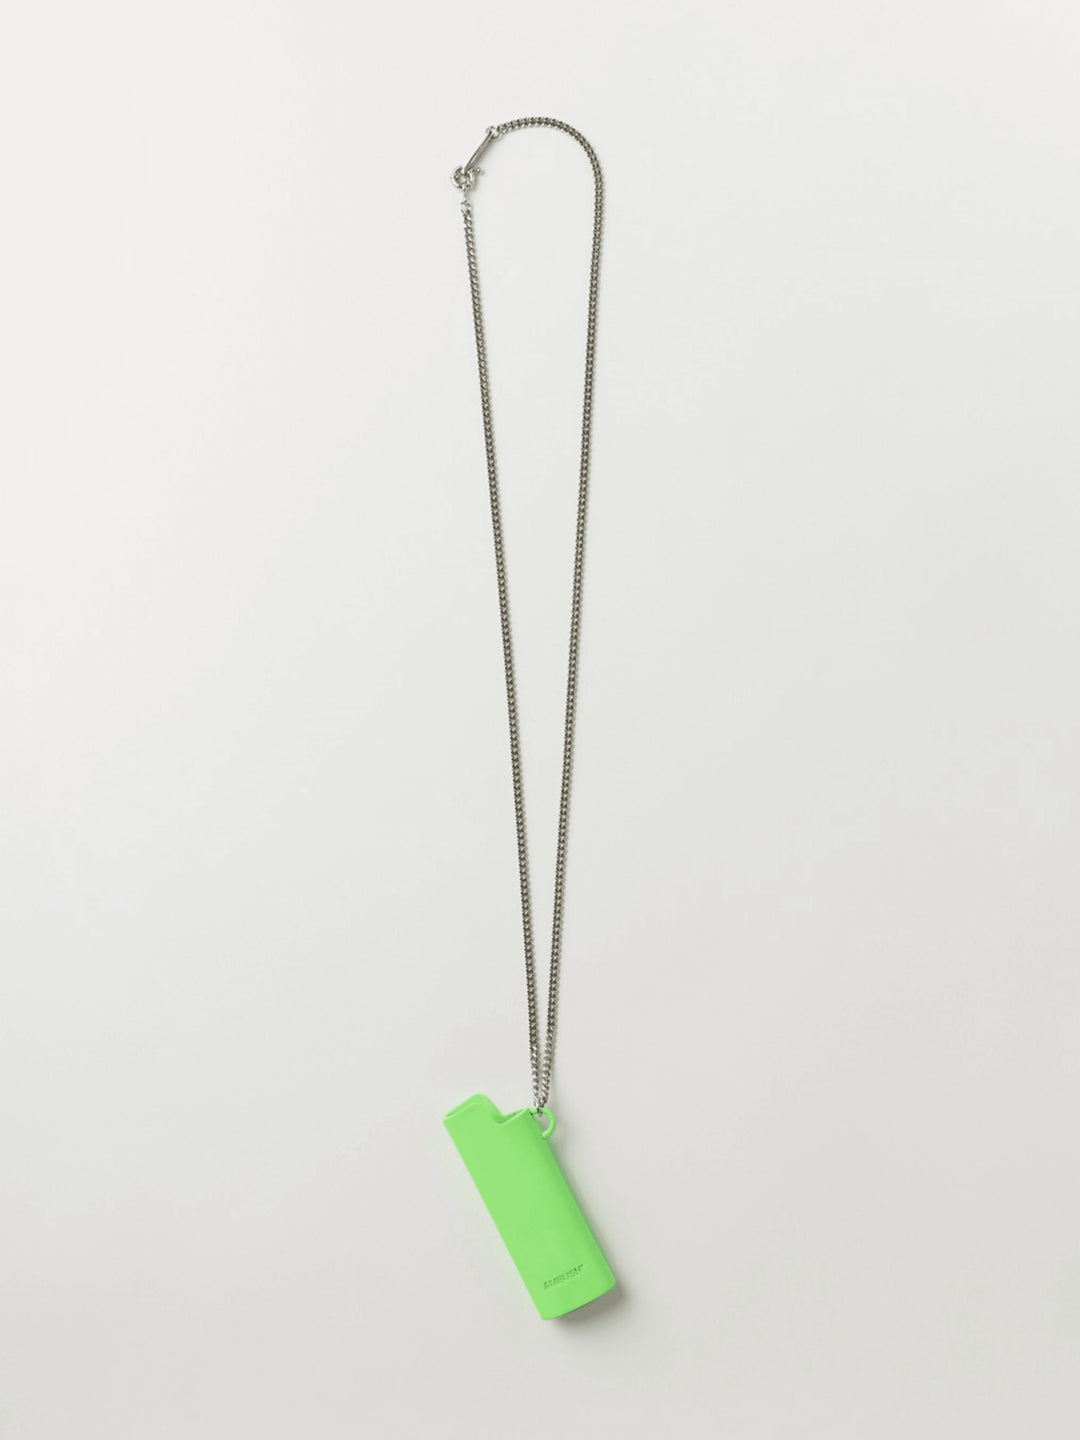 Ambush Lighter Case Necklace (Green) Small Ambush